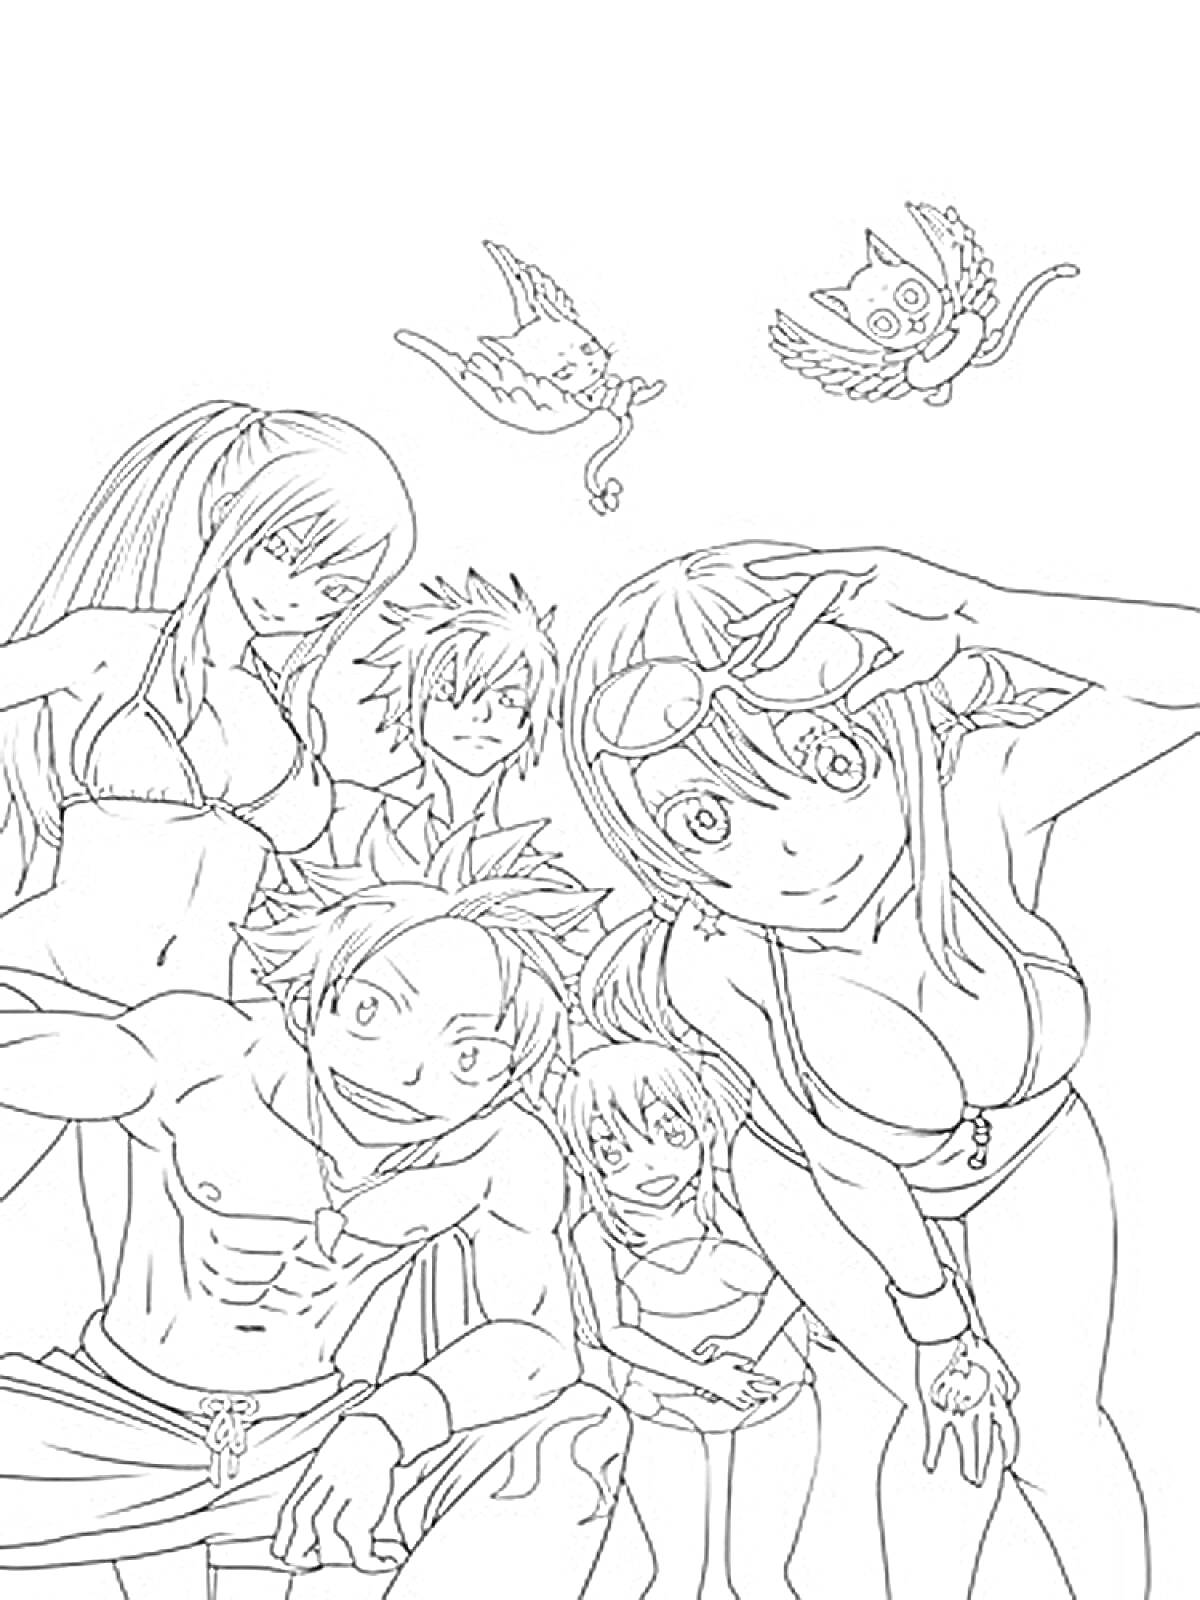 Группа персонажей из аниме Хвост Феи на пляже, включающая двух летающих существ